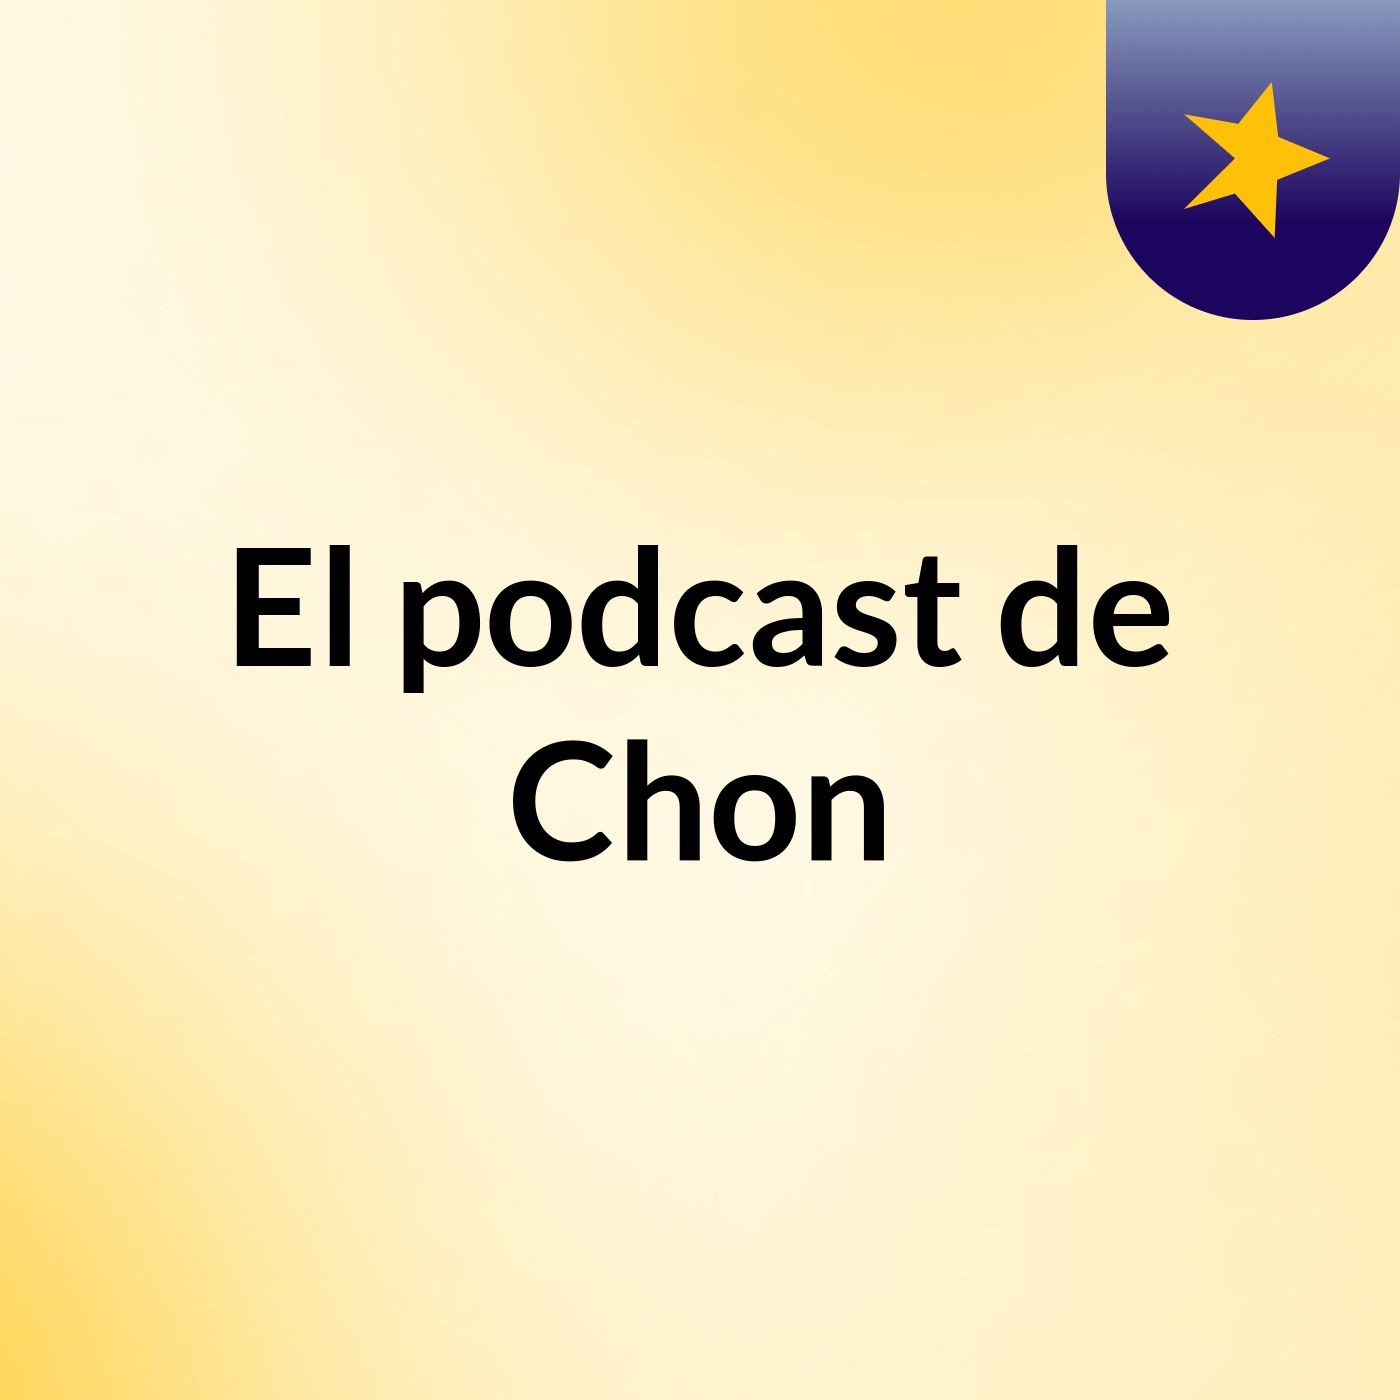 Episodio 3 - El podcast de Chon